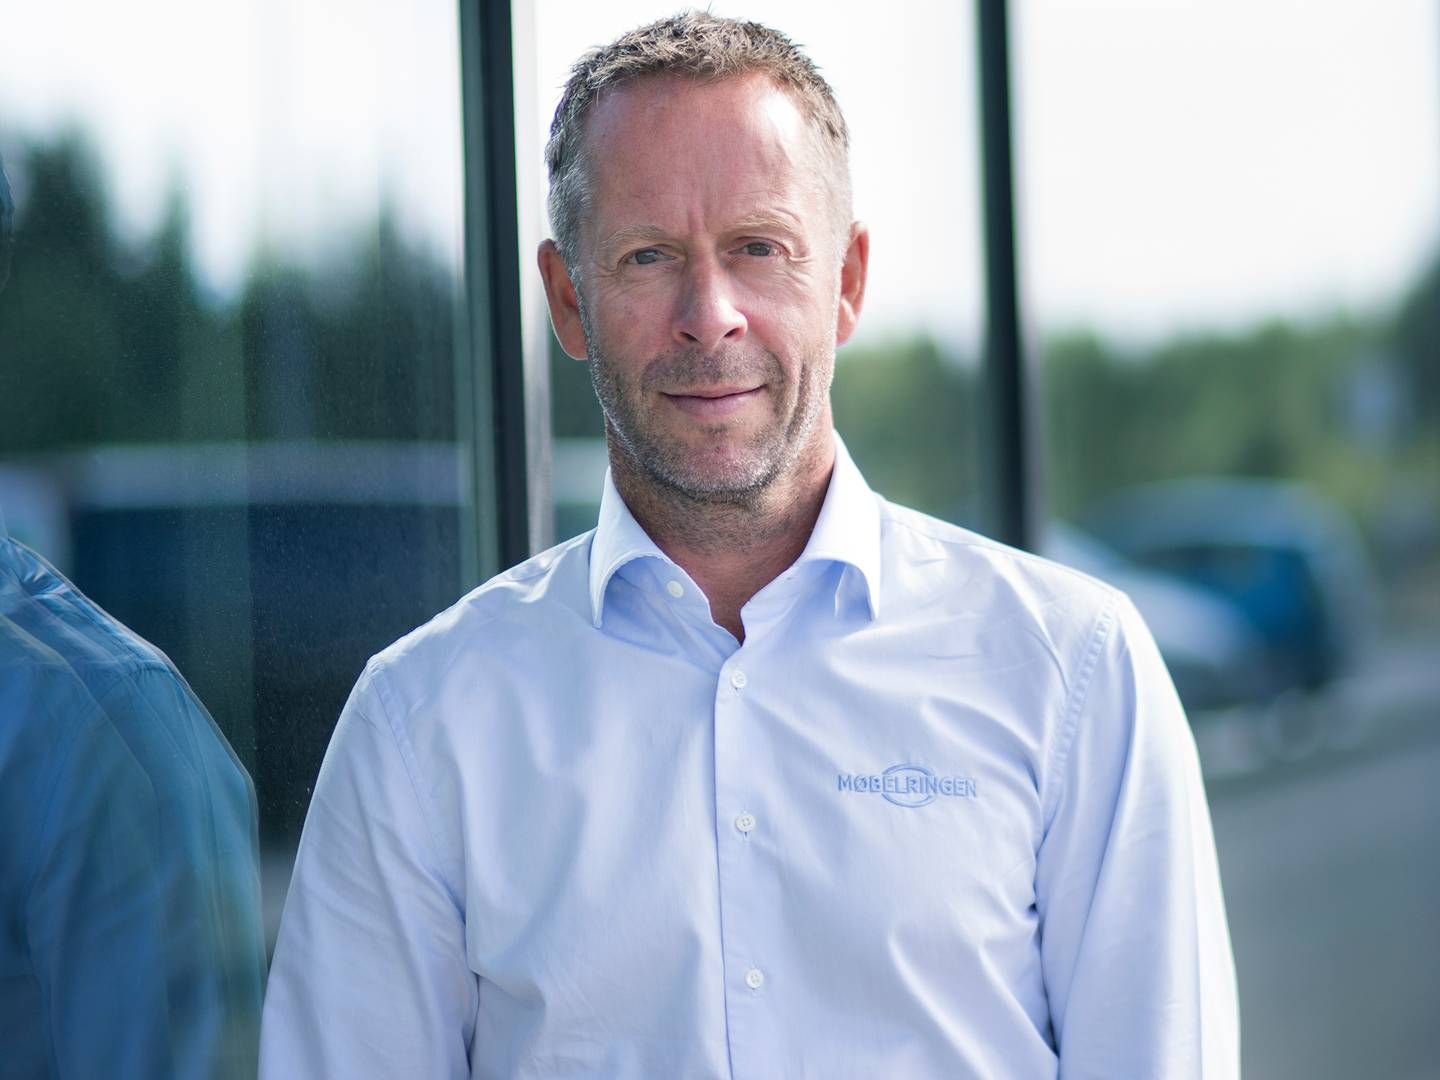 SLUTTER: Henning Eriksen, administrerende direktør i Møbelringen, er blitt enig med styret om å slutte. | Foto: Møbelringen